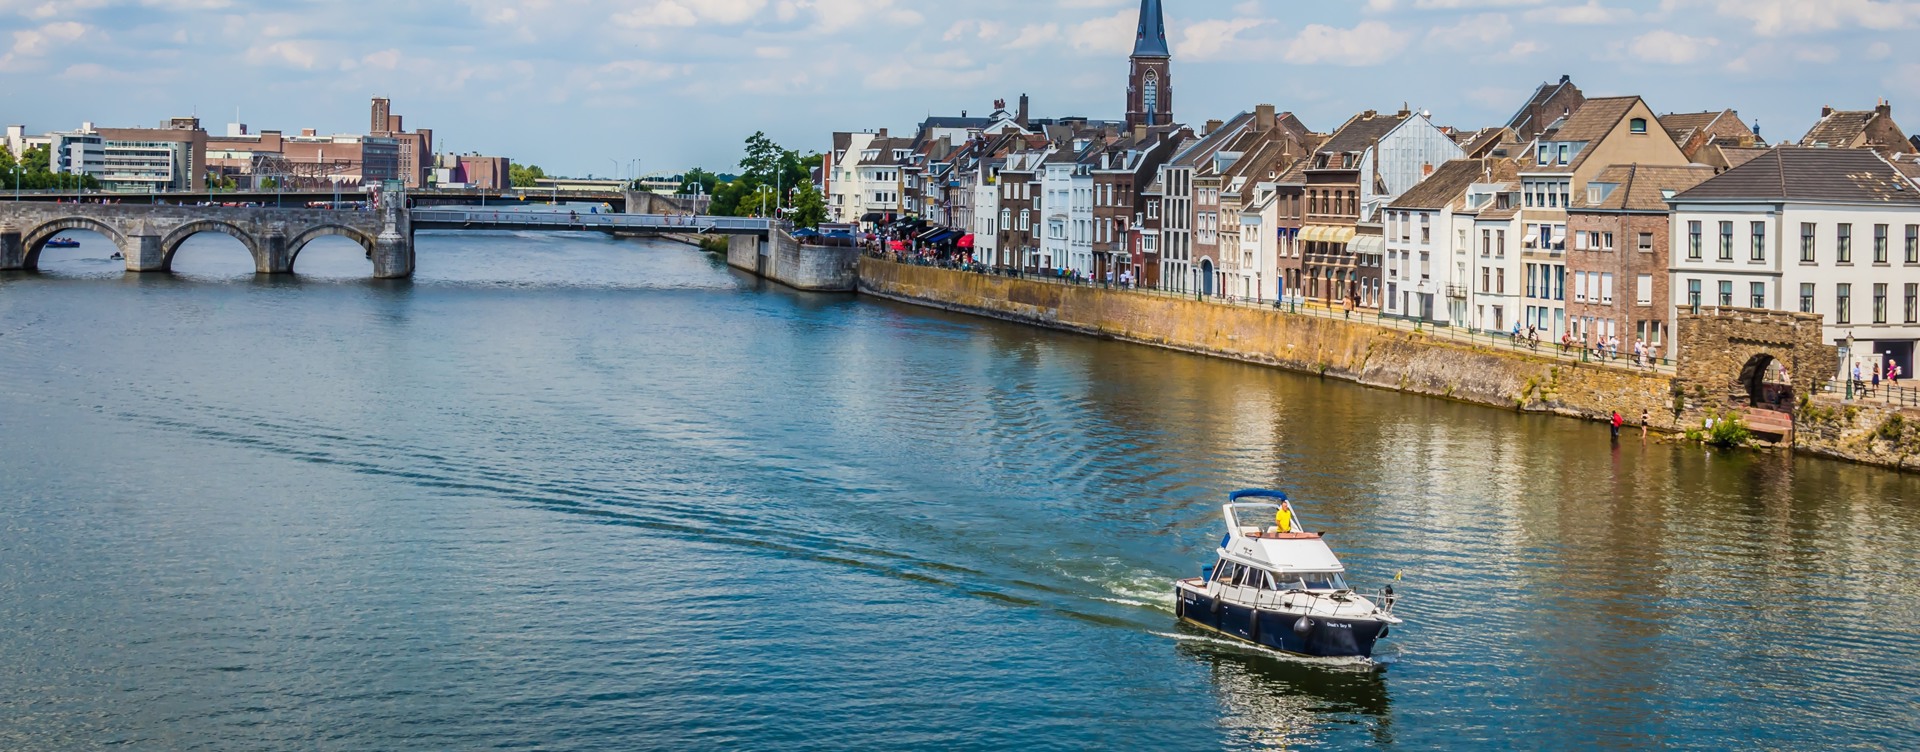 Vivez les plus chouettes activités
à Maastricht et dans les environs